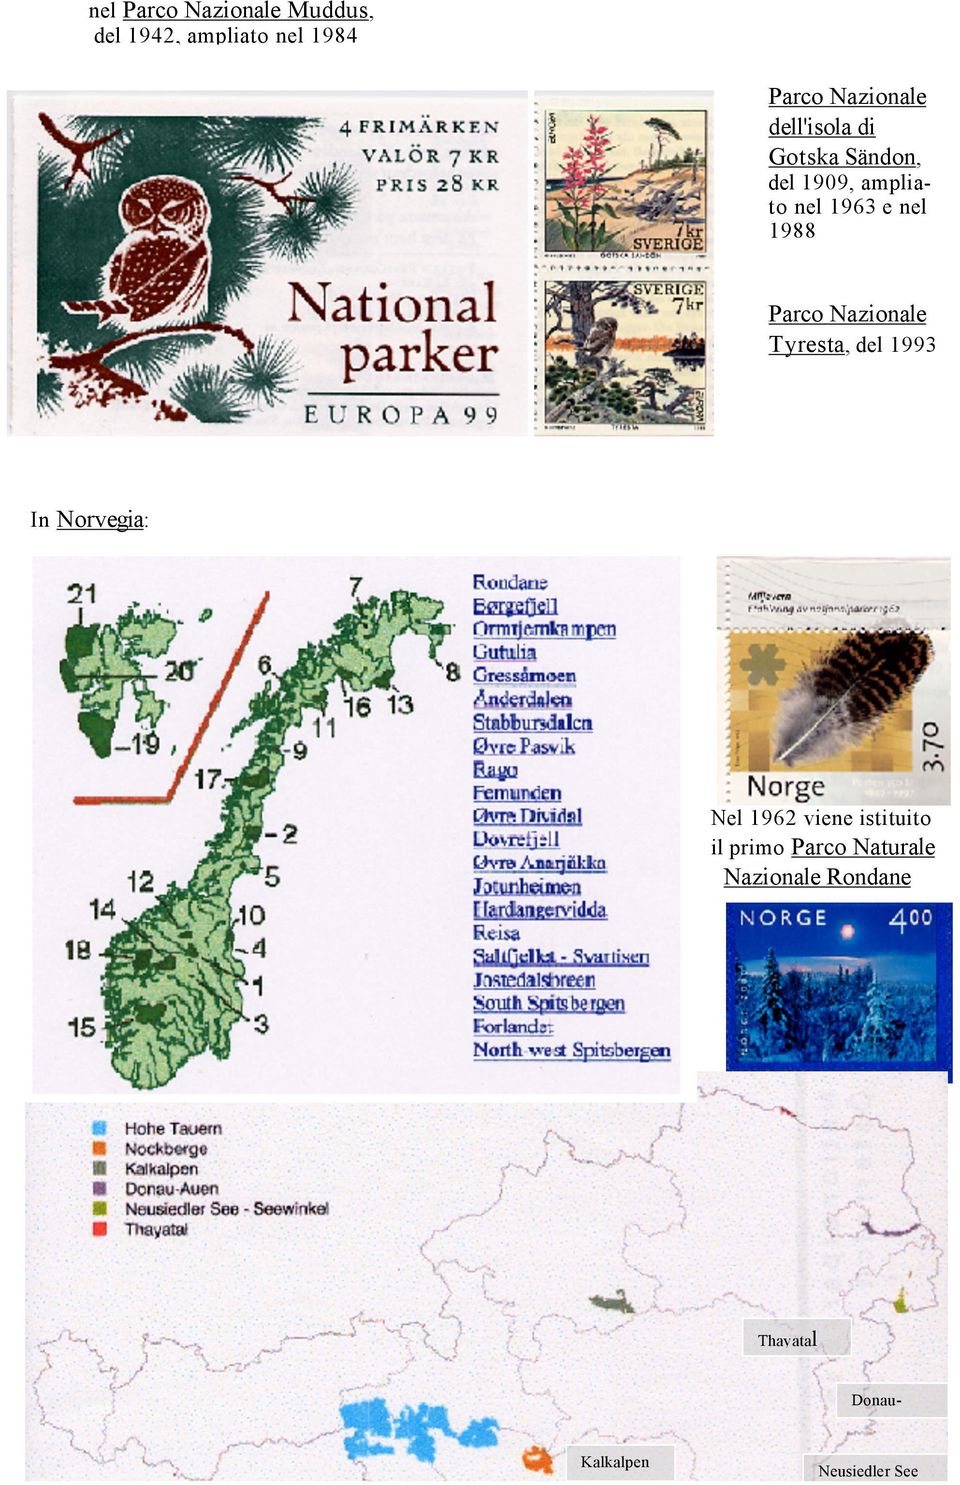 Naturale Nazionale Rondane In Austria: Mappa dei Parchi Nazionali Nel Foresta 1962 di viene Pini istituito nel il